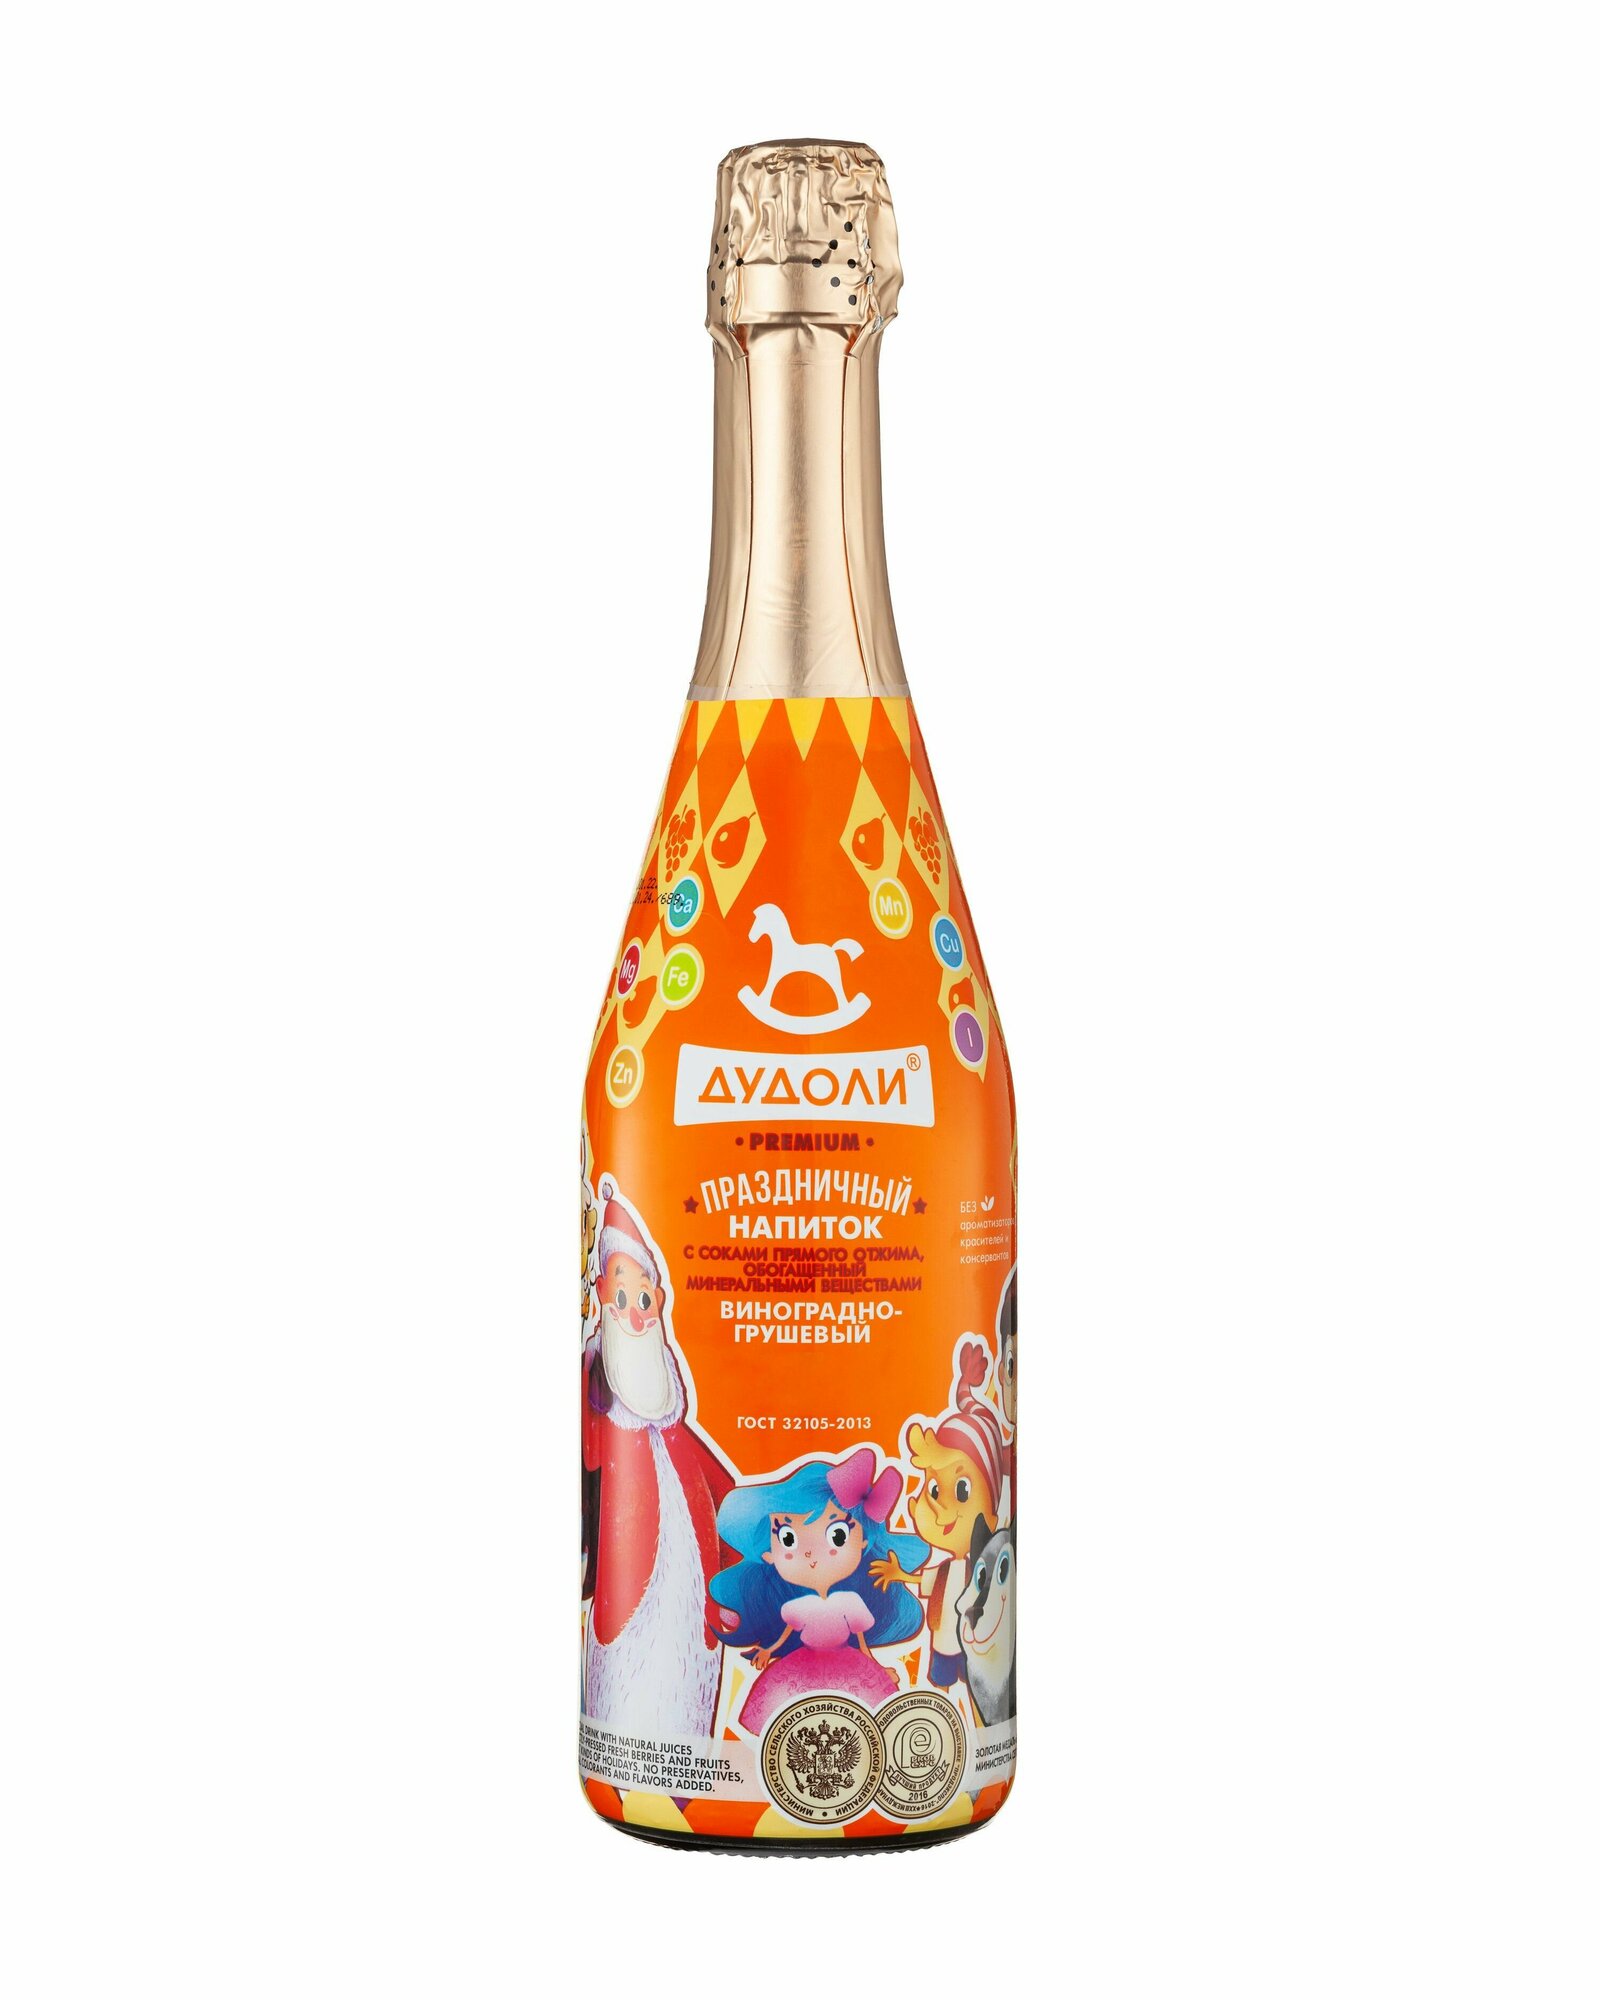 Лимонад детское безалкогольное шампанское Absolute Nature "Дудоли" виноградно-грушевое, 0.75 л. на день рождения